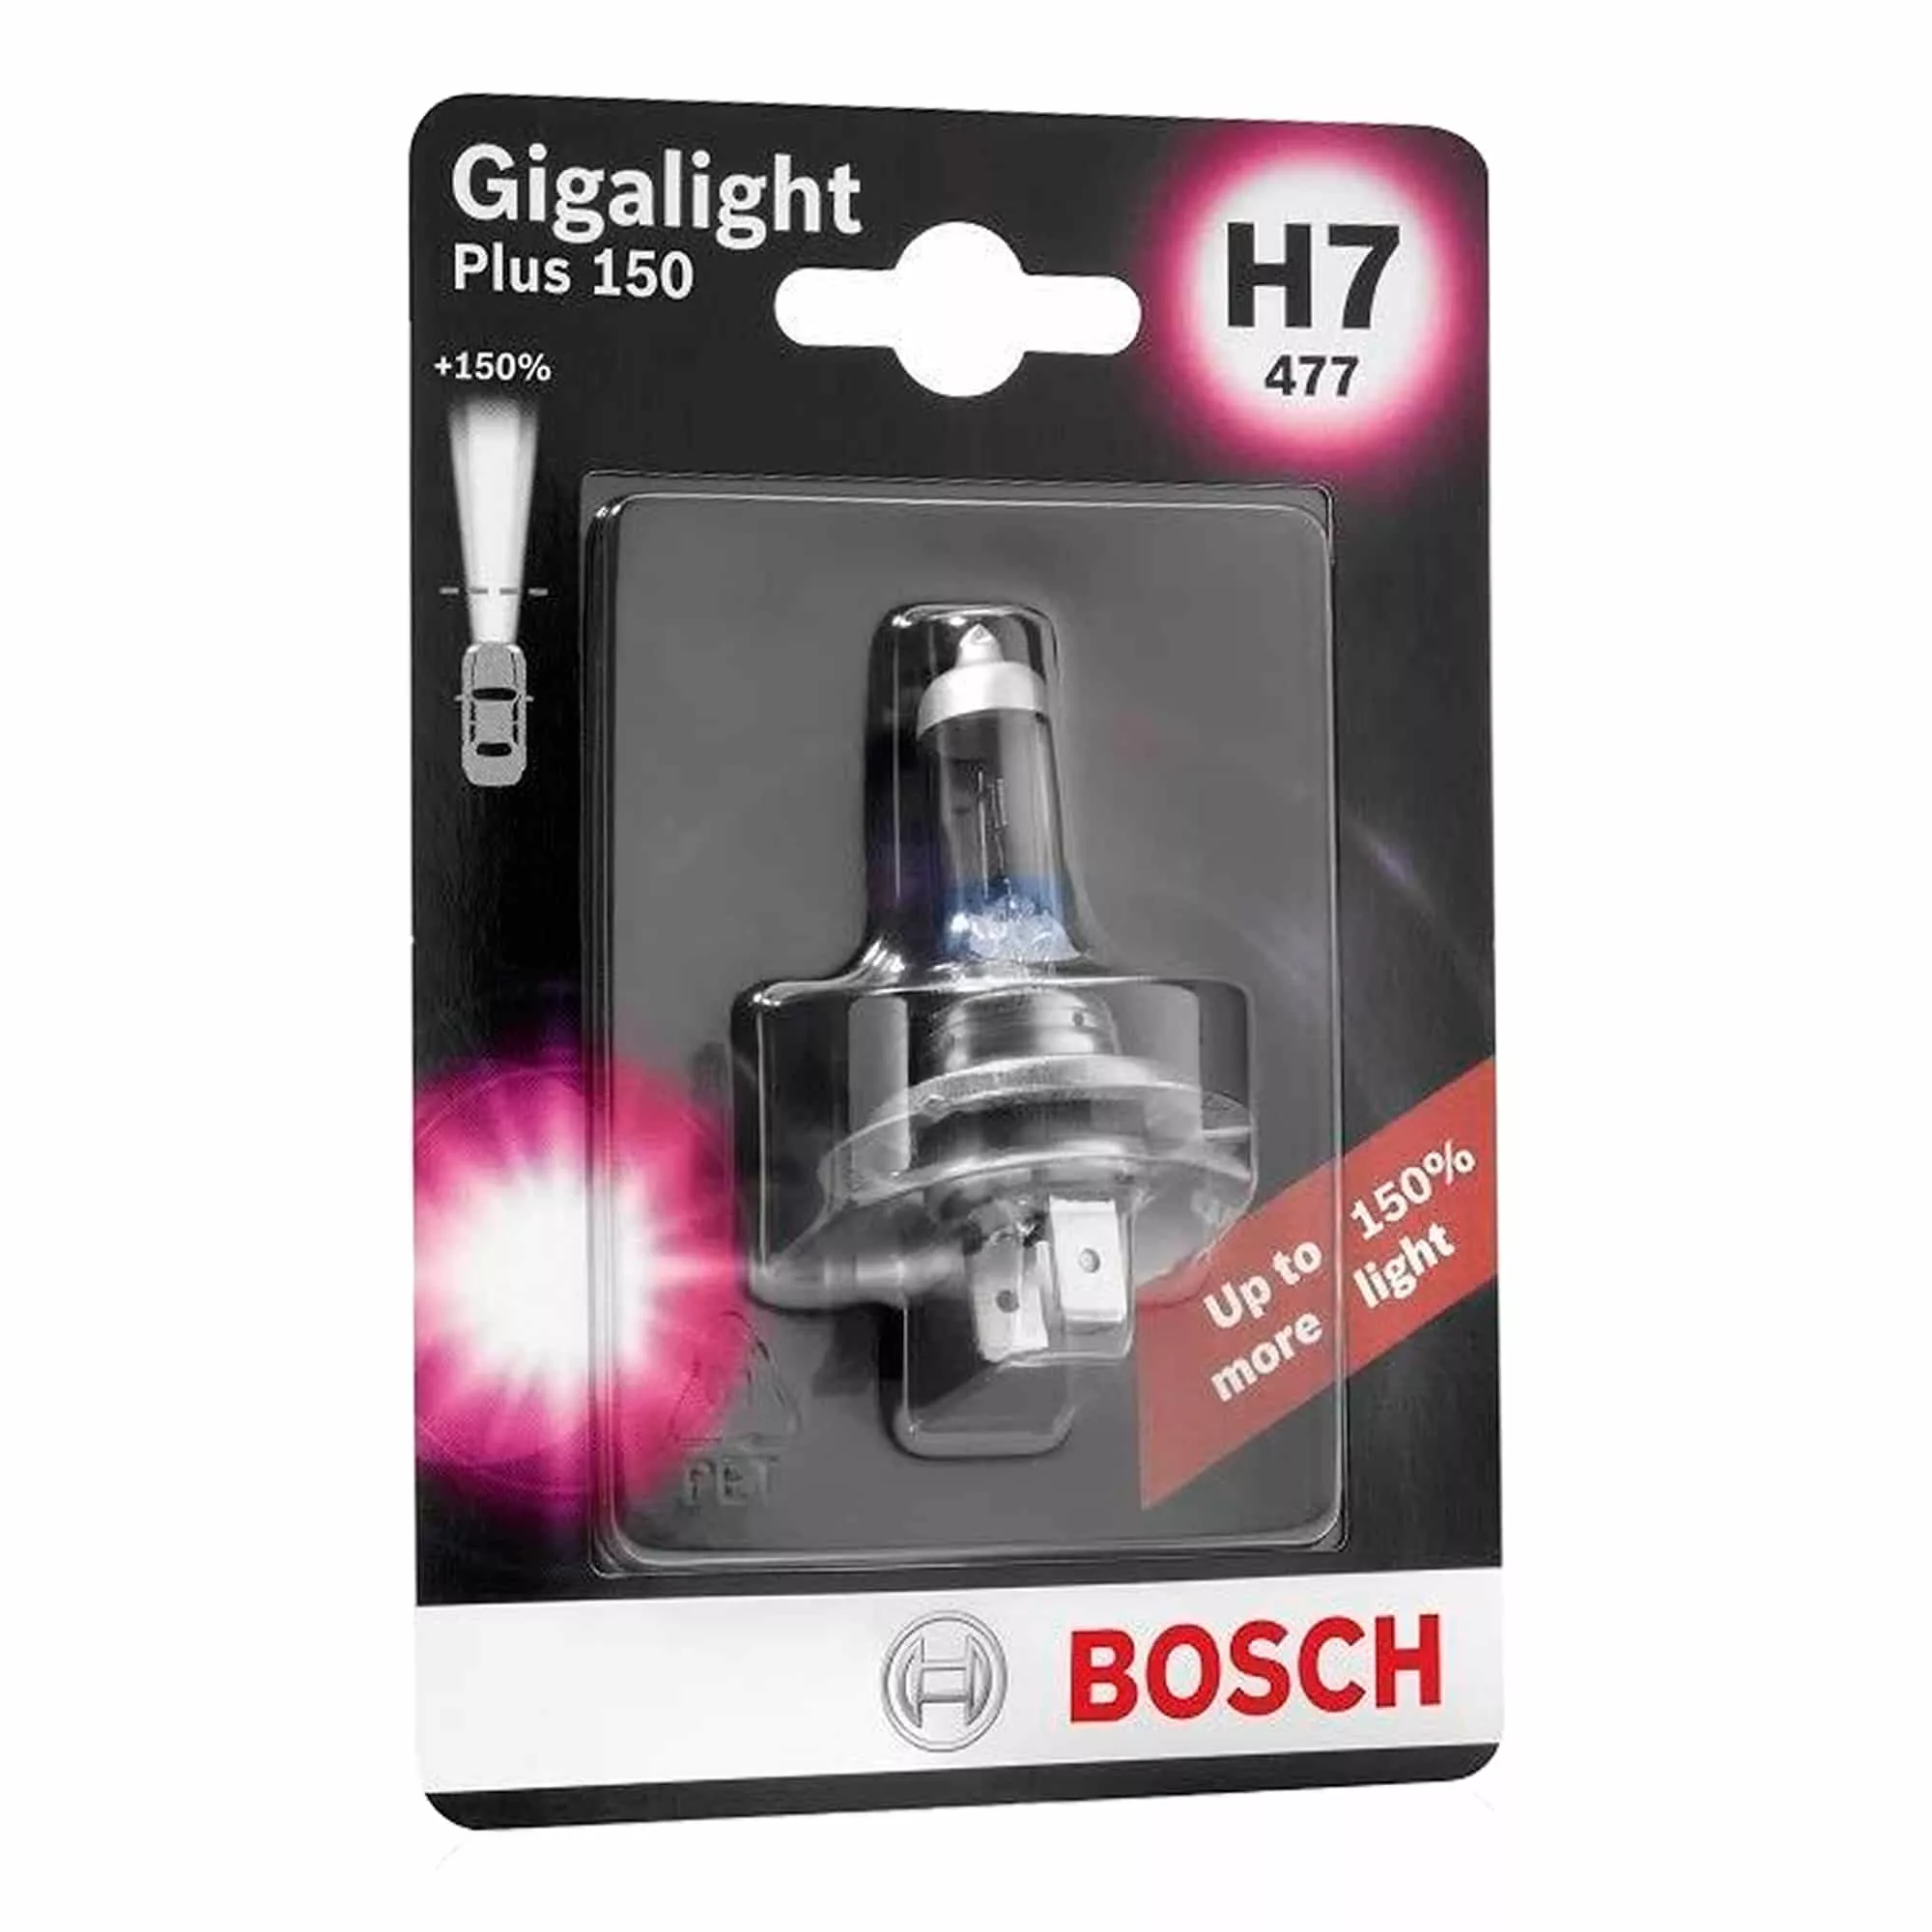 Лампа Bosch Gigalight Plus 150 H7 12V 55W 1987301137